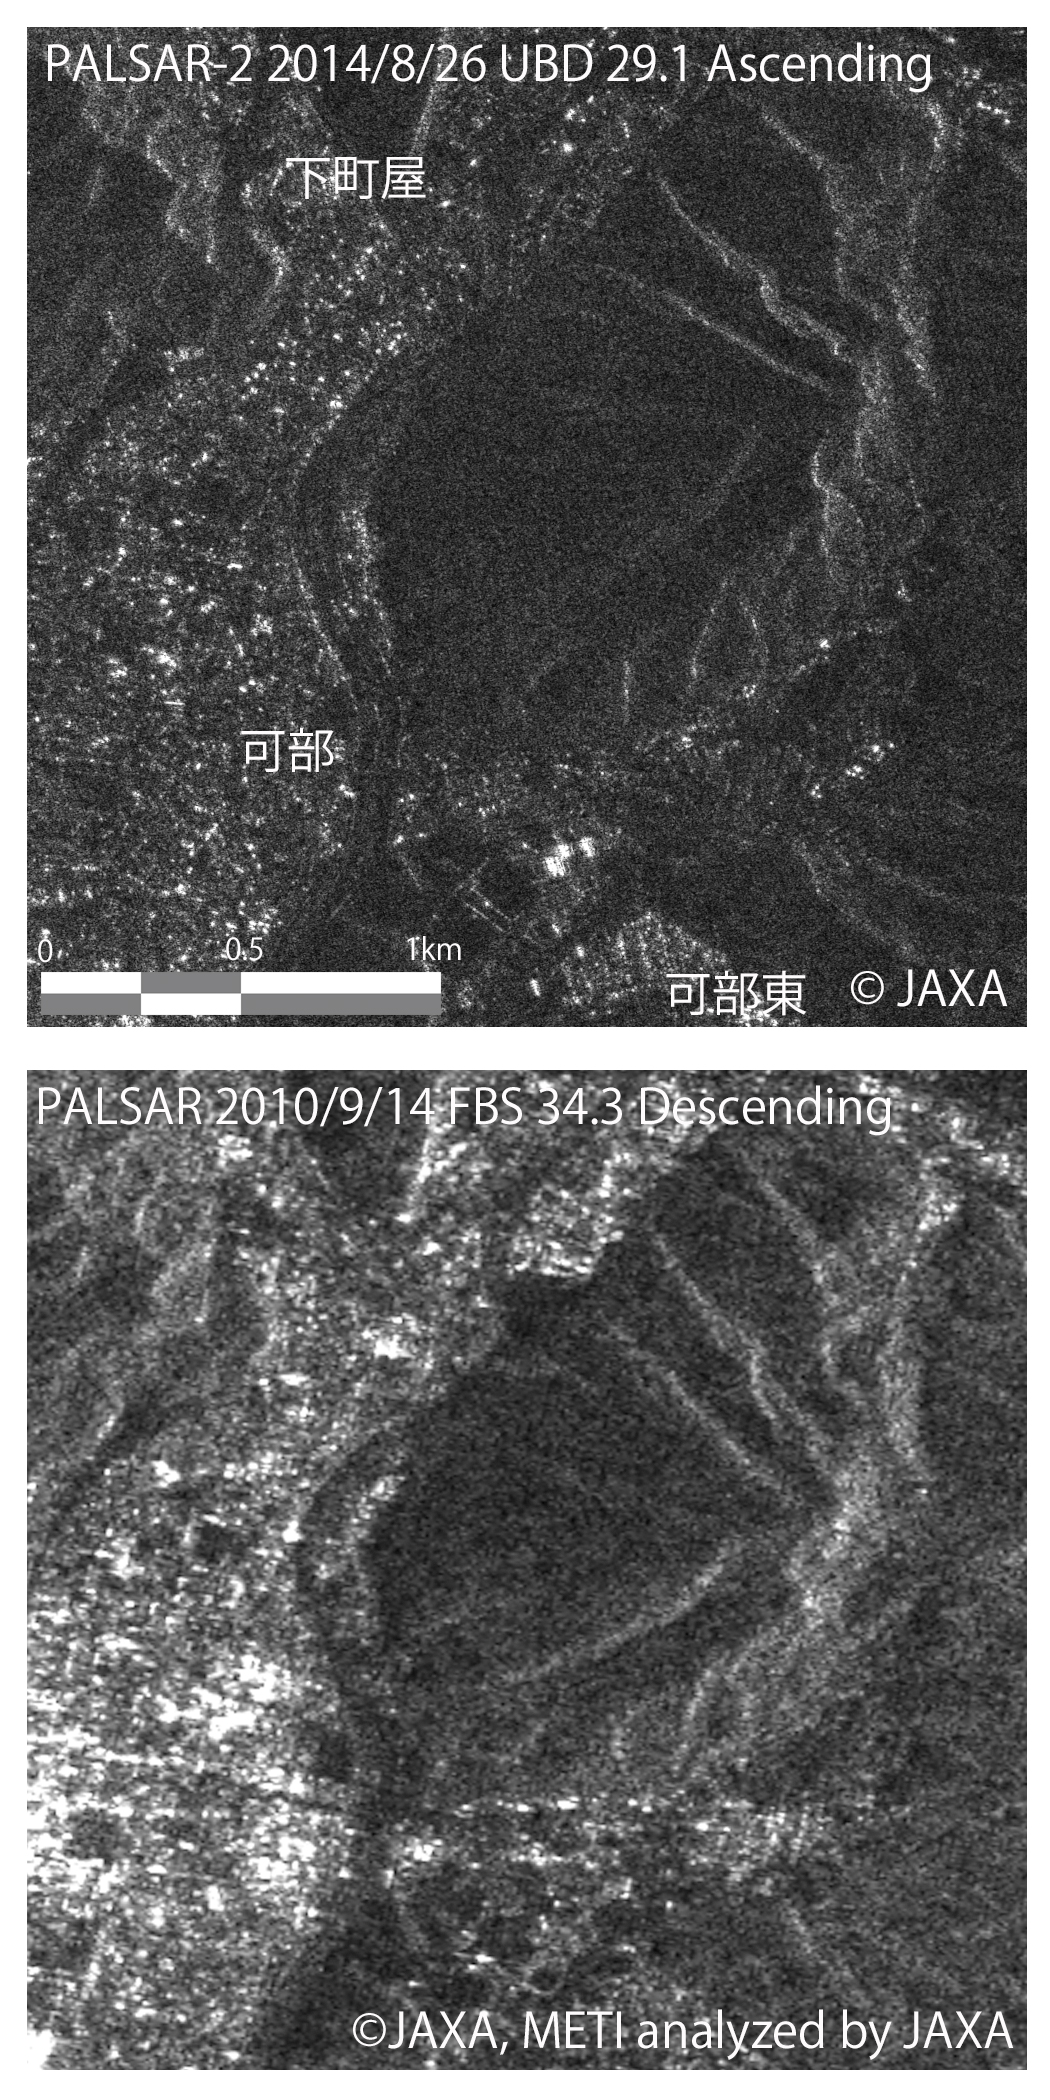 図5: PALSAR-2(上図)とPALSAR(下図)観測による広島市安佐北区付近の比較画像